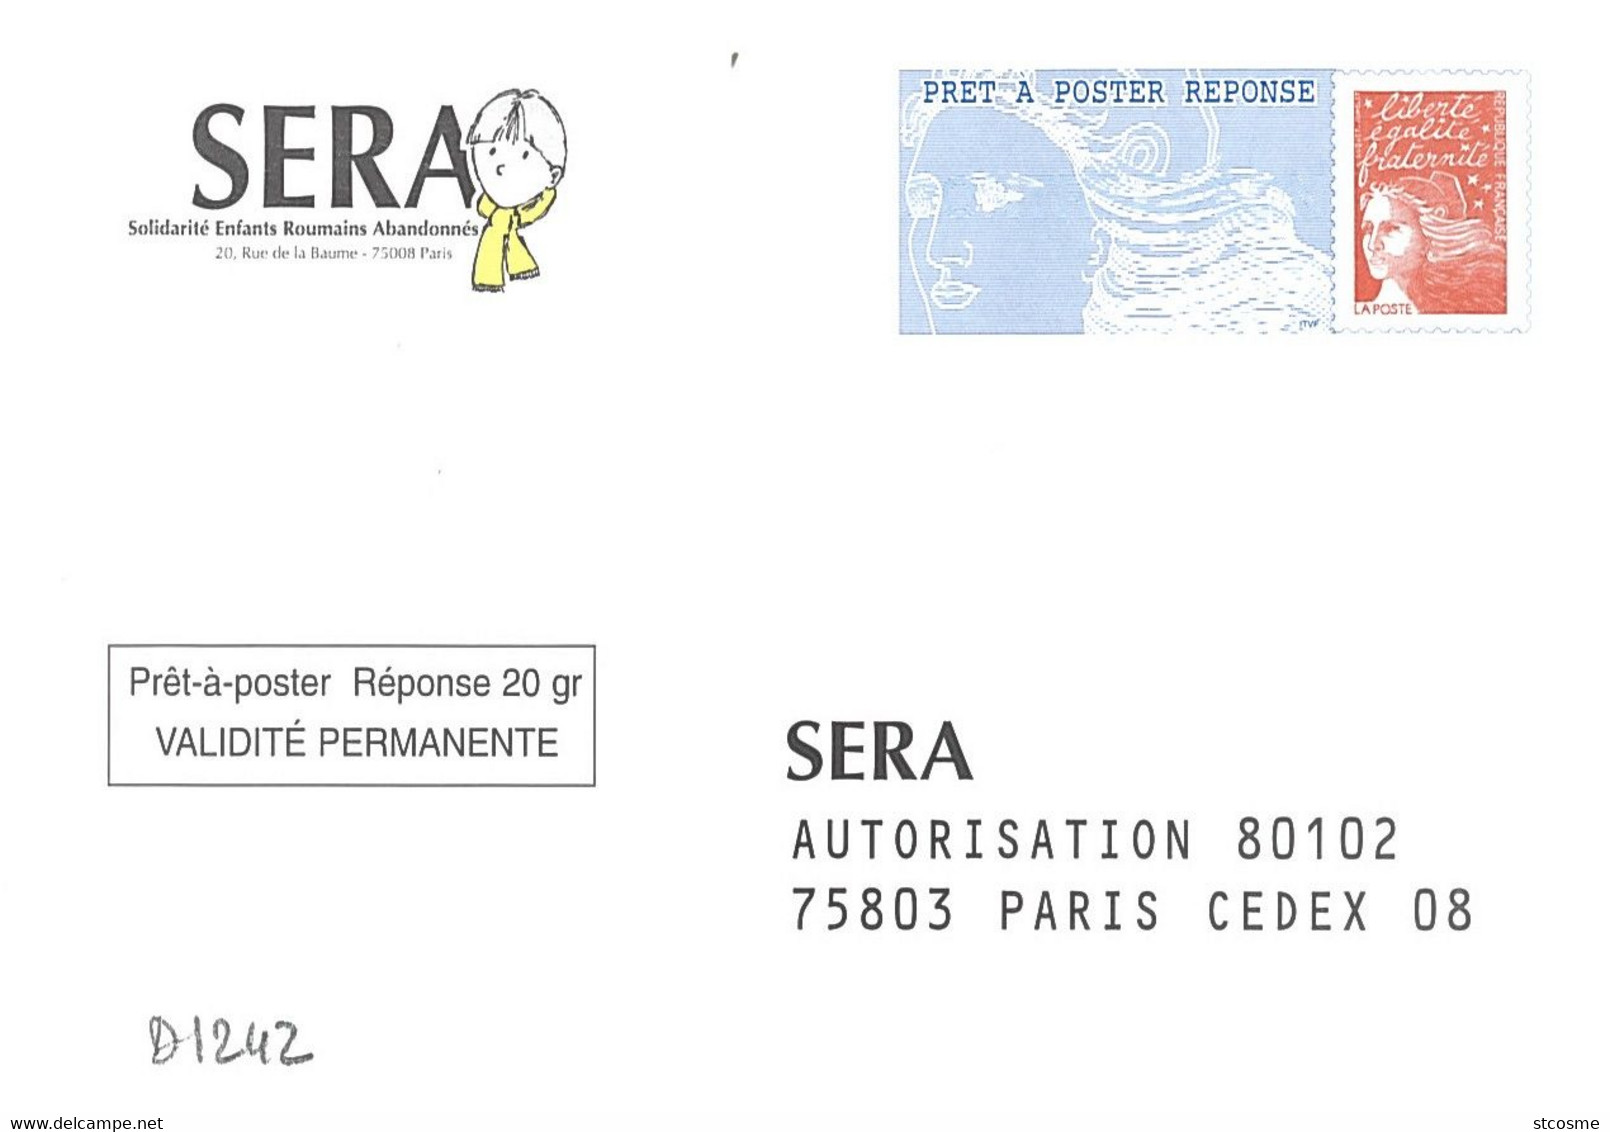 D1242 - Entier / Stationery / PSE - PAP Réponse Luquet - SERA ( Sans Agrément ) - Prêts-à-poster:Answer/Luquet